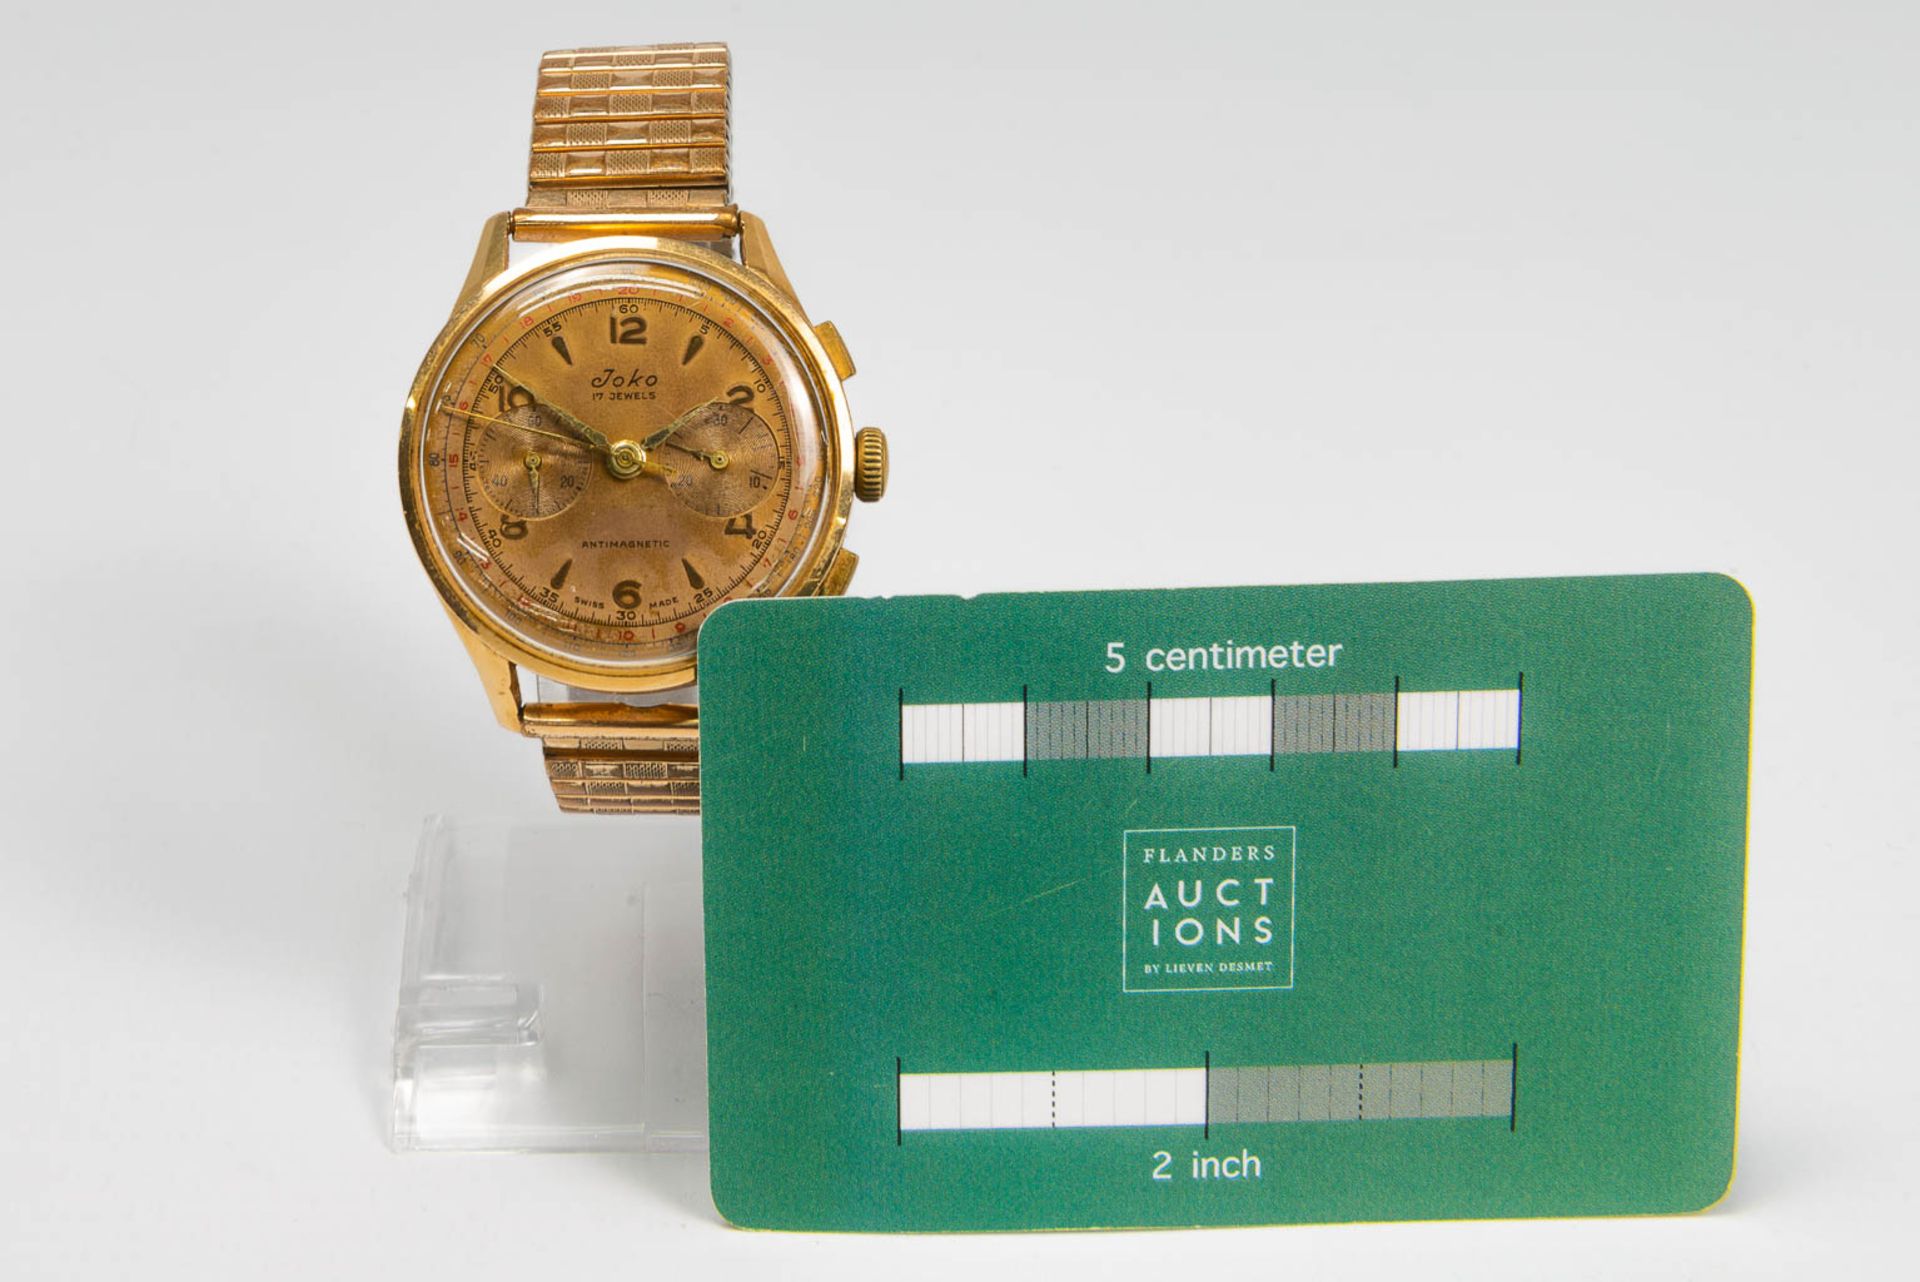 A Chronograph suisse mens's wristwatch marked Joco with an 18 karat gold case. Chronograph in workin - Bild 4 aus 6